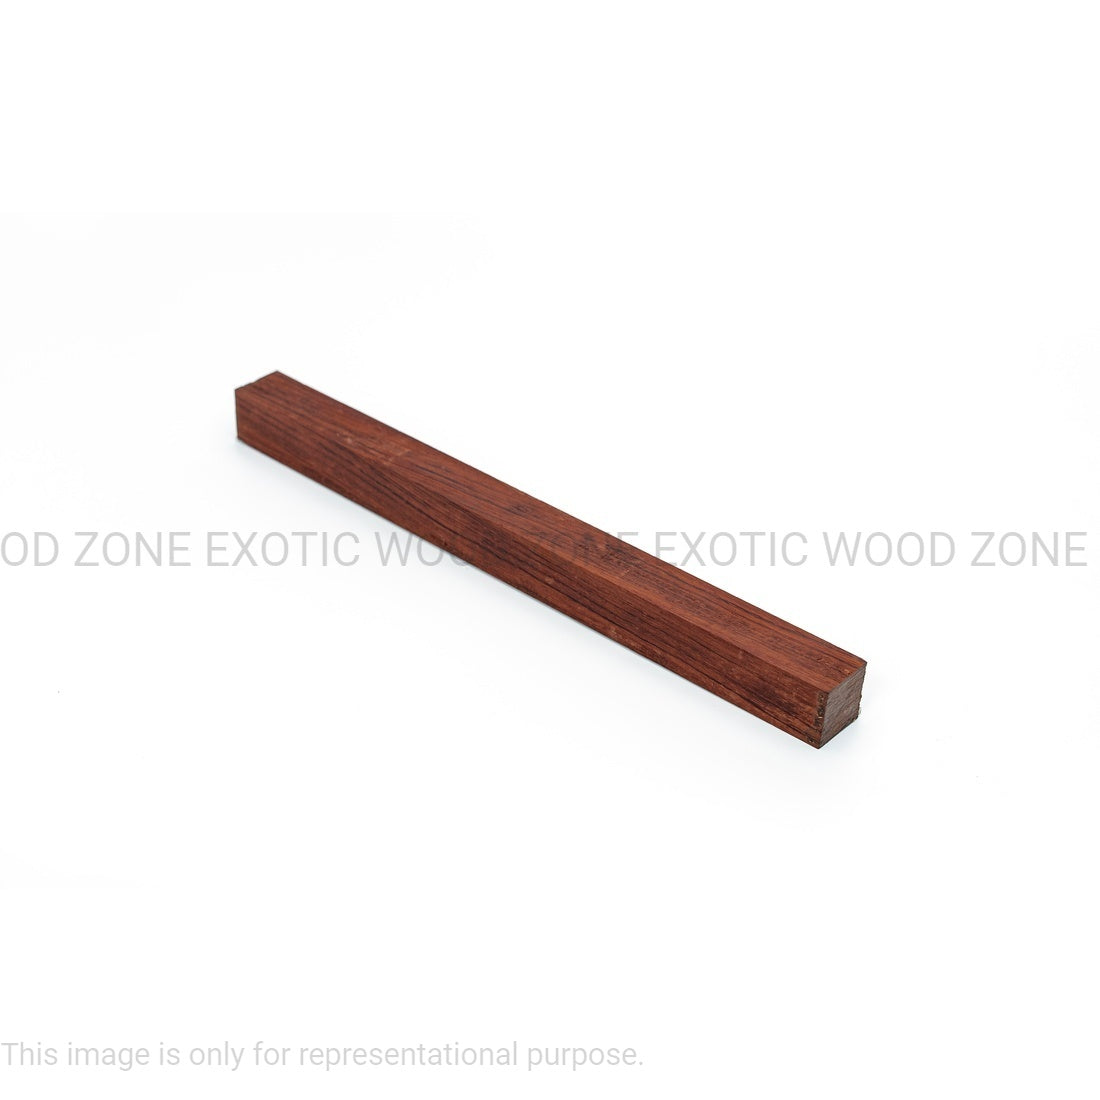 Pack Of 8 Bubinga Hardwood Turning Square Wood Blanks 1 x 1 x 12 inches